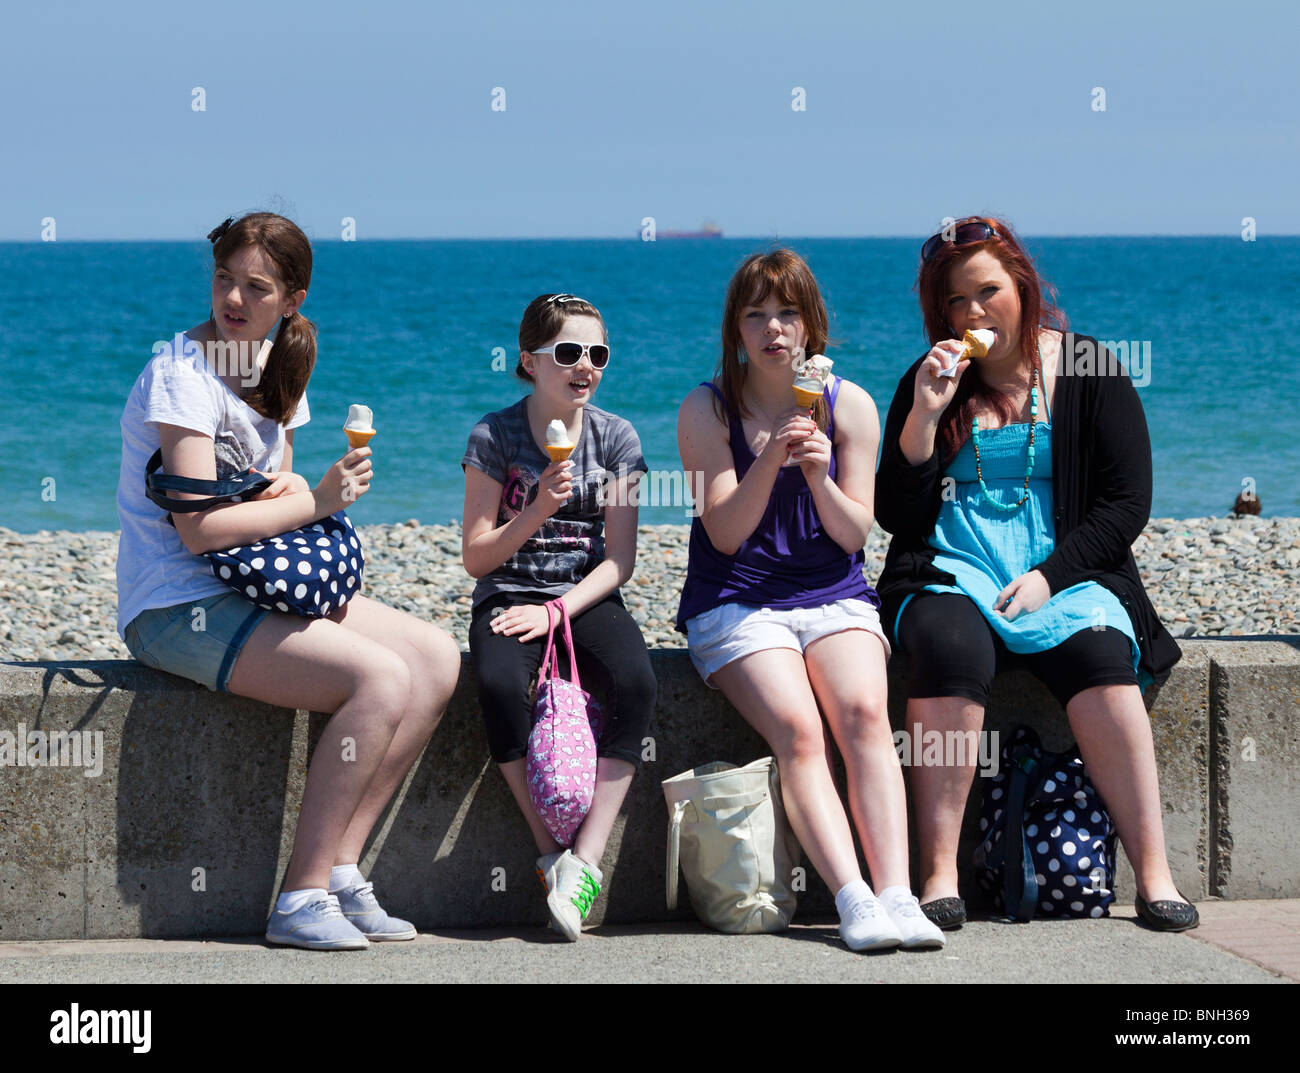 girls eating ice cream, Bray seaside resort, Ireland Stock Photo